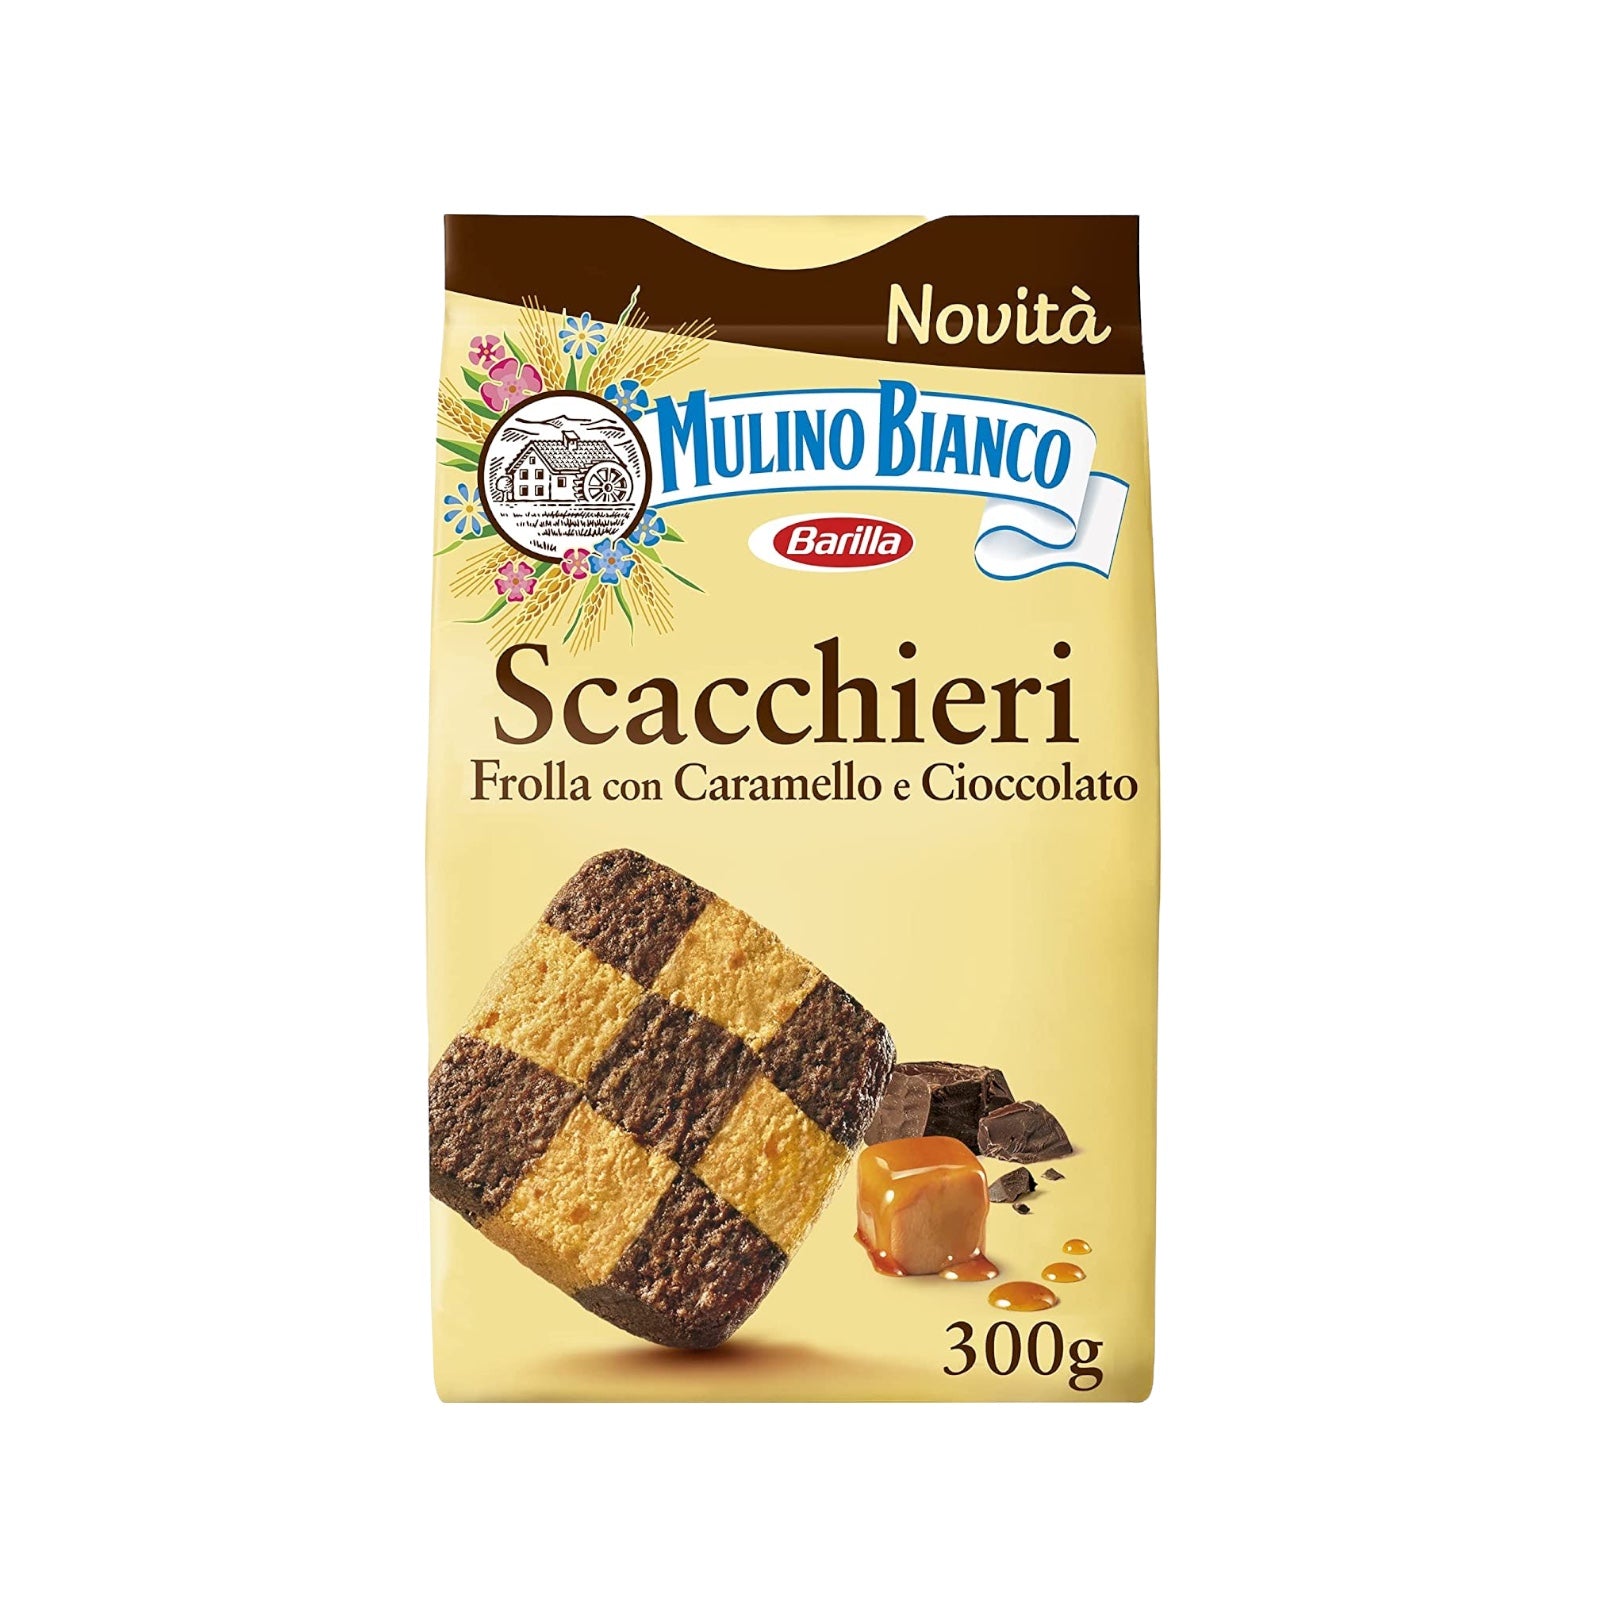 Mulino Bianco Scacchieri Cookies 300g